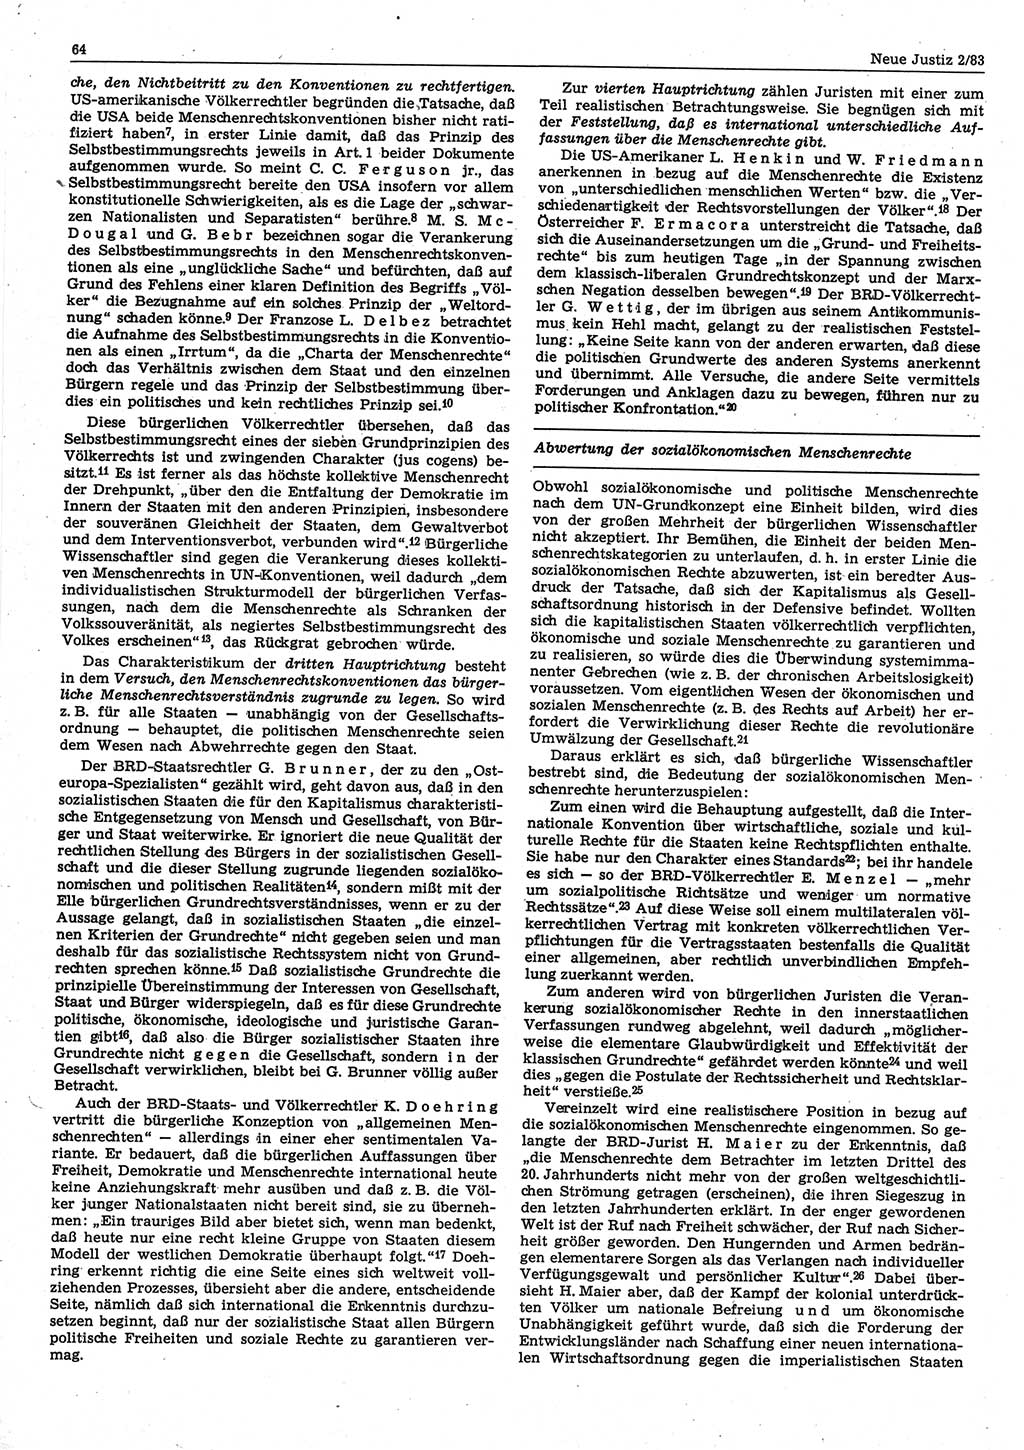 Neue Justiz (NJ), Zeitschrift für sozialistisches Recht und Gesetzlichkeit [Deutsche Demokratische Republik (DDR)], 37. Jahrgang 1983, Seite 64 (NJ DDR 1983, S. 64)